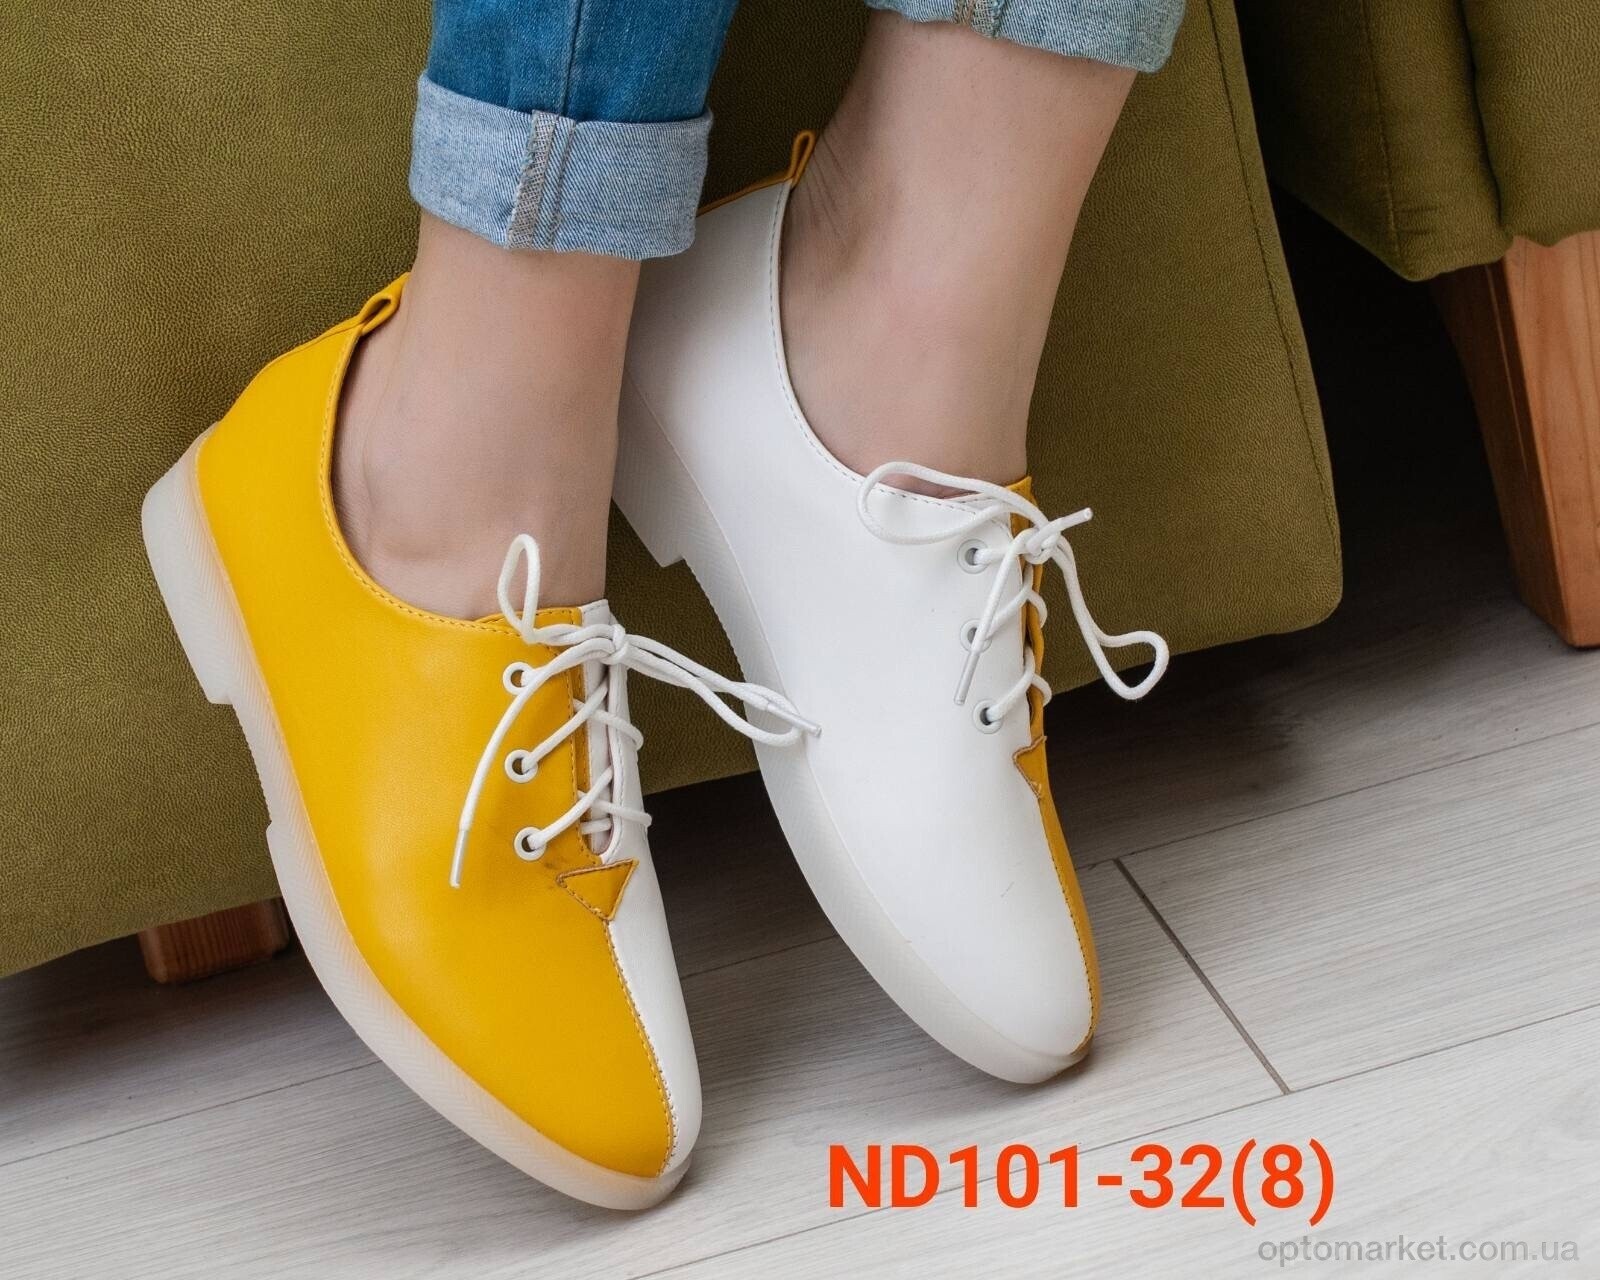 Купить Туфлі жіночі ND101-32 Teetspace жовтий, фото 2